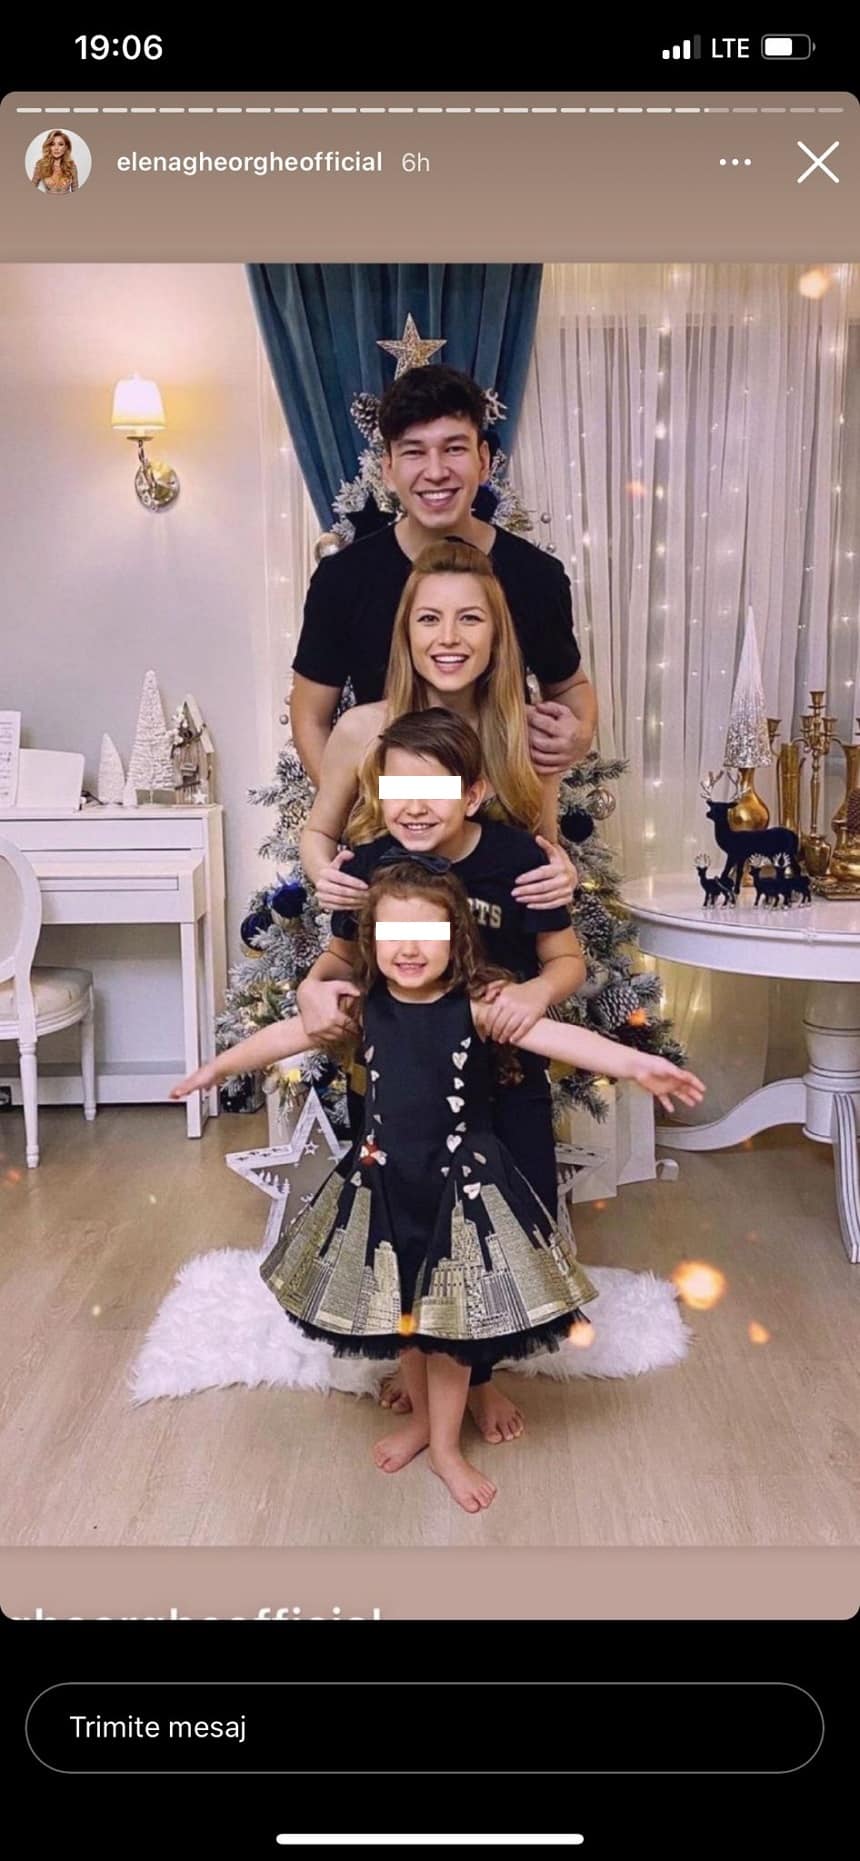 Elena Gheorghe, momente unice petrecute cu familia în a doua zi de Crăciun! Imaginea amuzantă cu cei mici